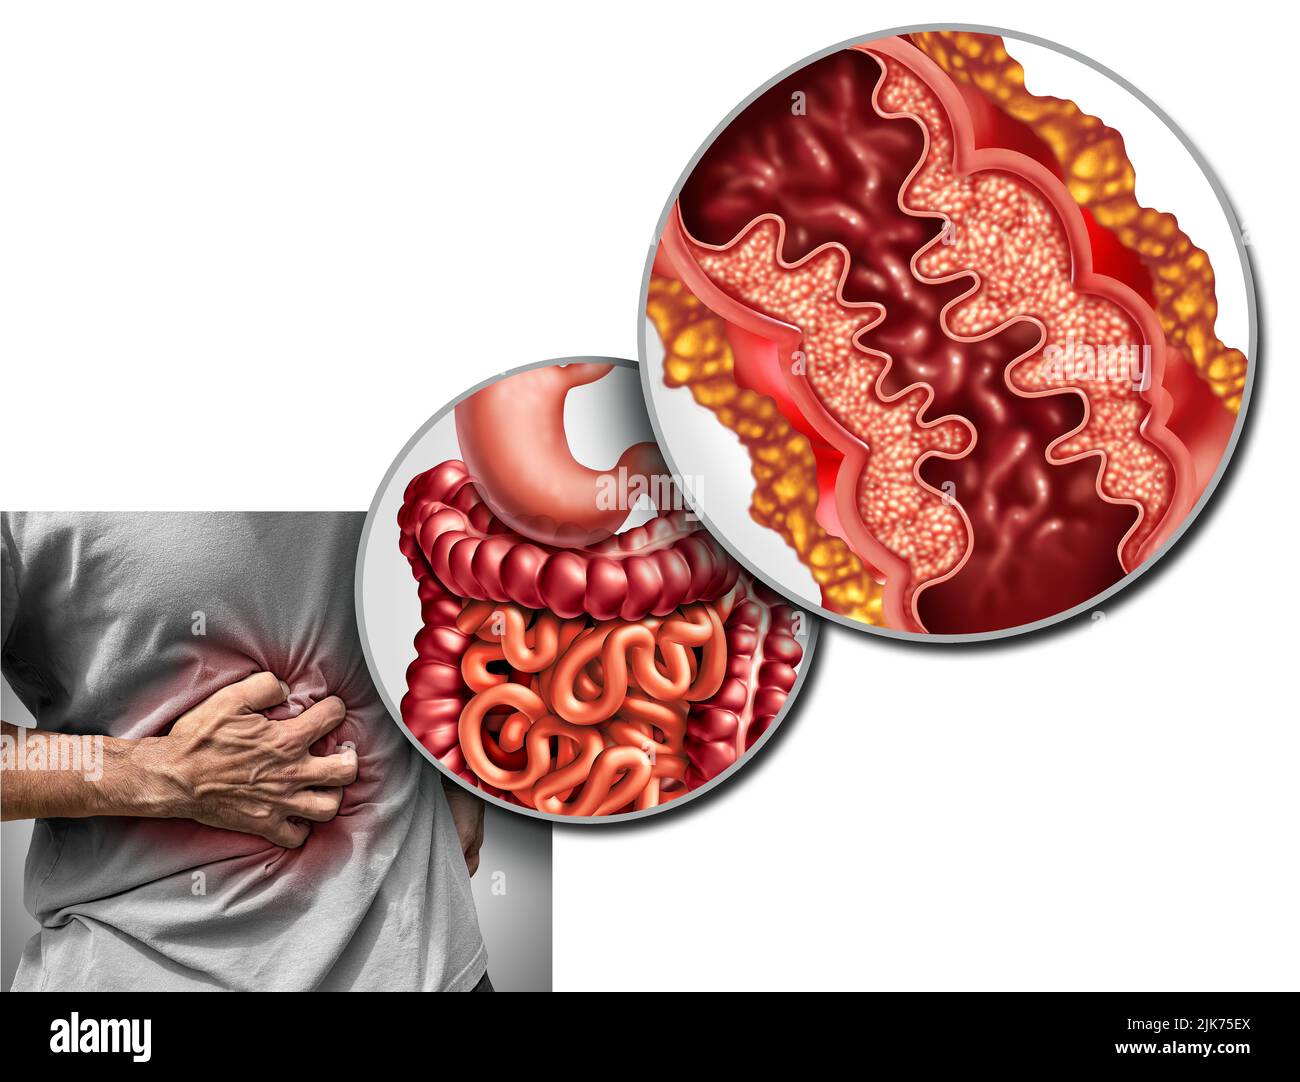 Malattia di Crohn dolore e sindrome di Crohn malattia o malattia di crohns come un concetto medico con un primo piano di un intestino umano con infiammazione. Foto Stock